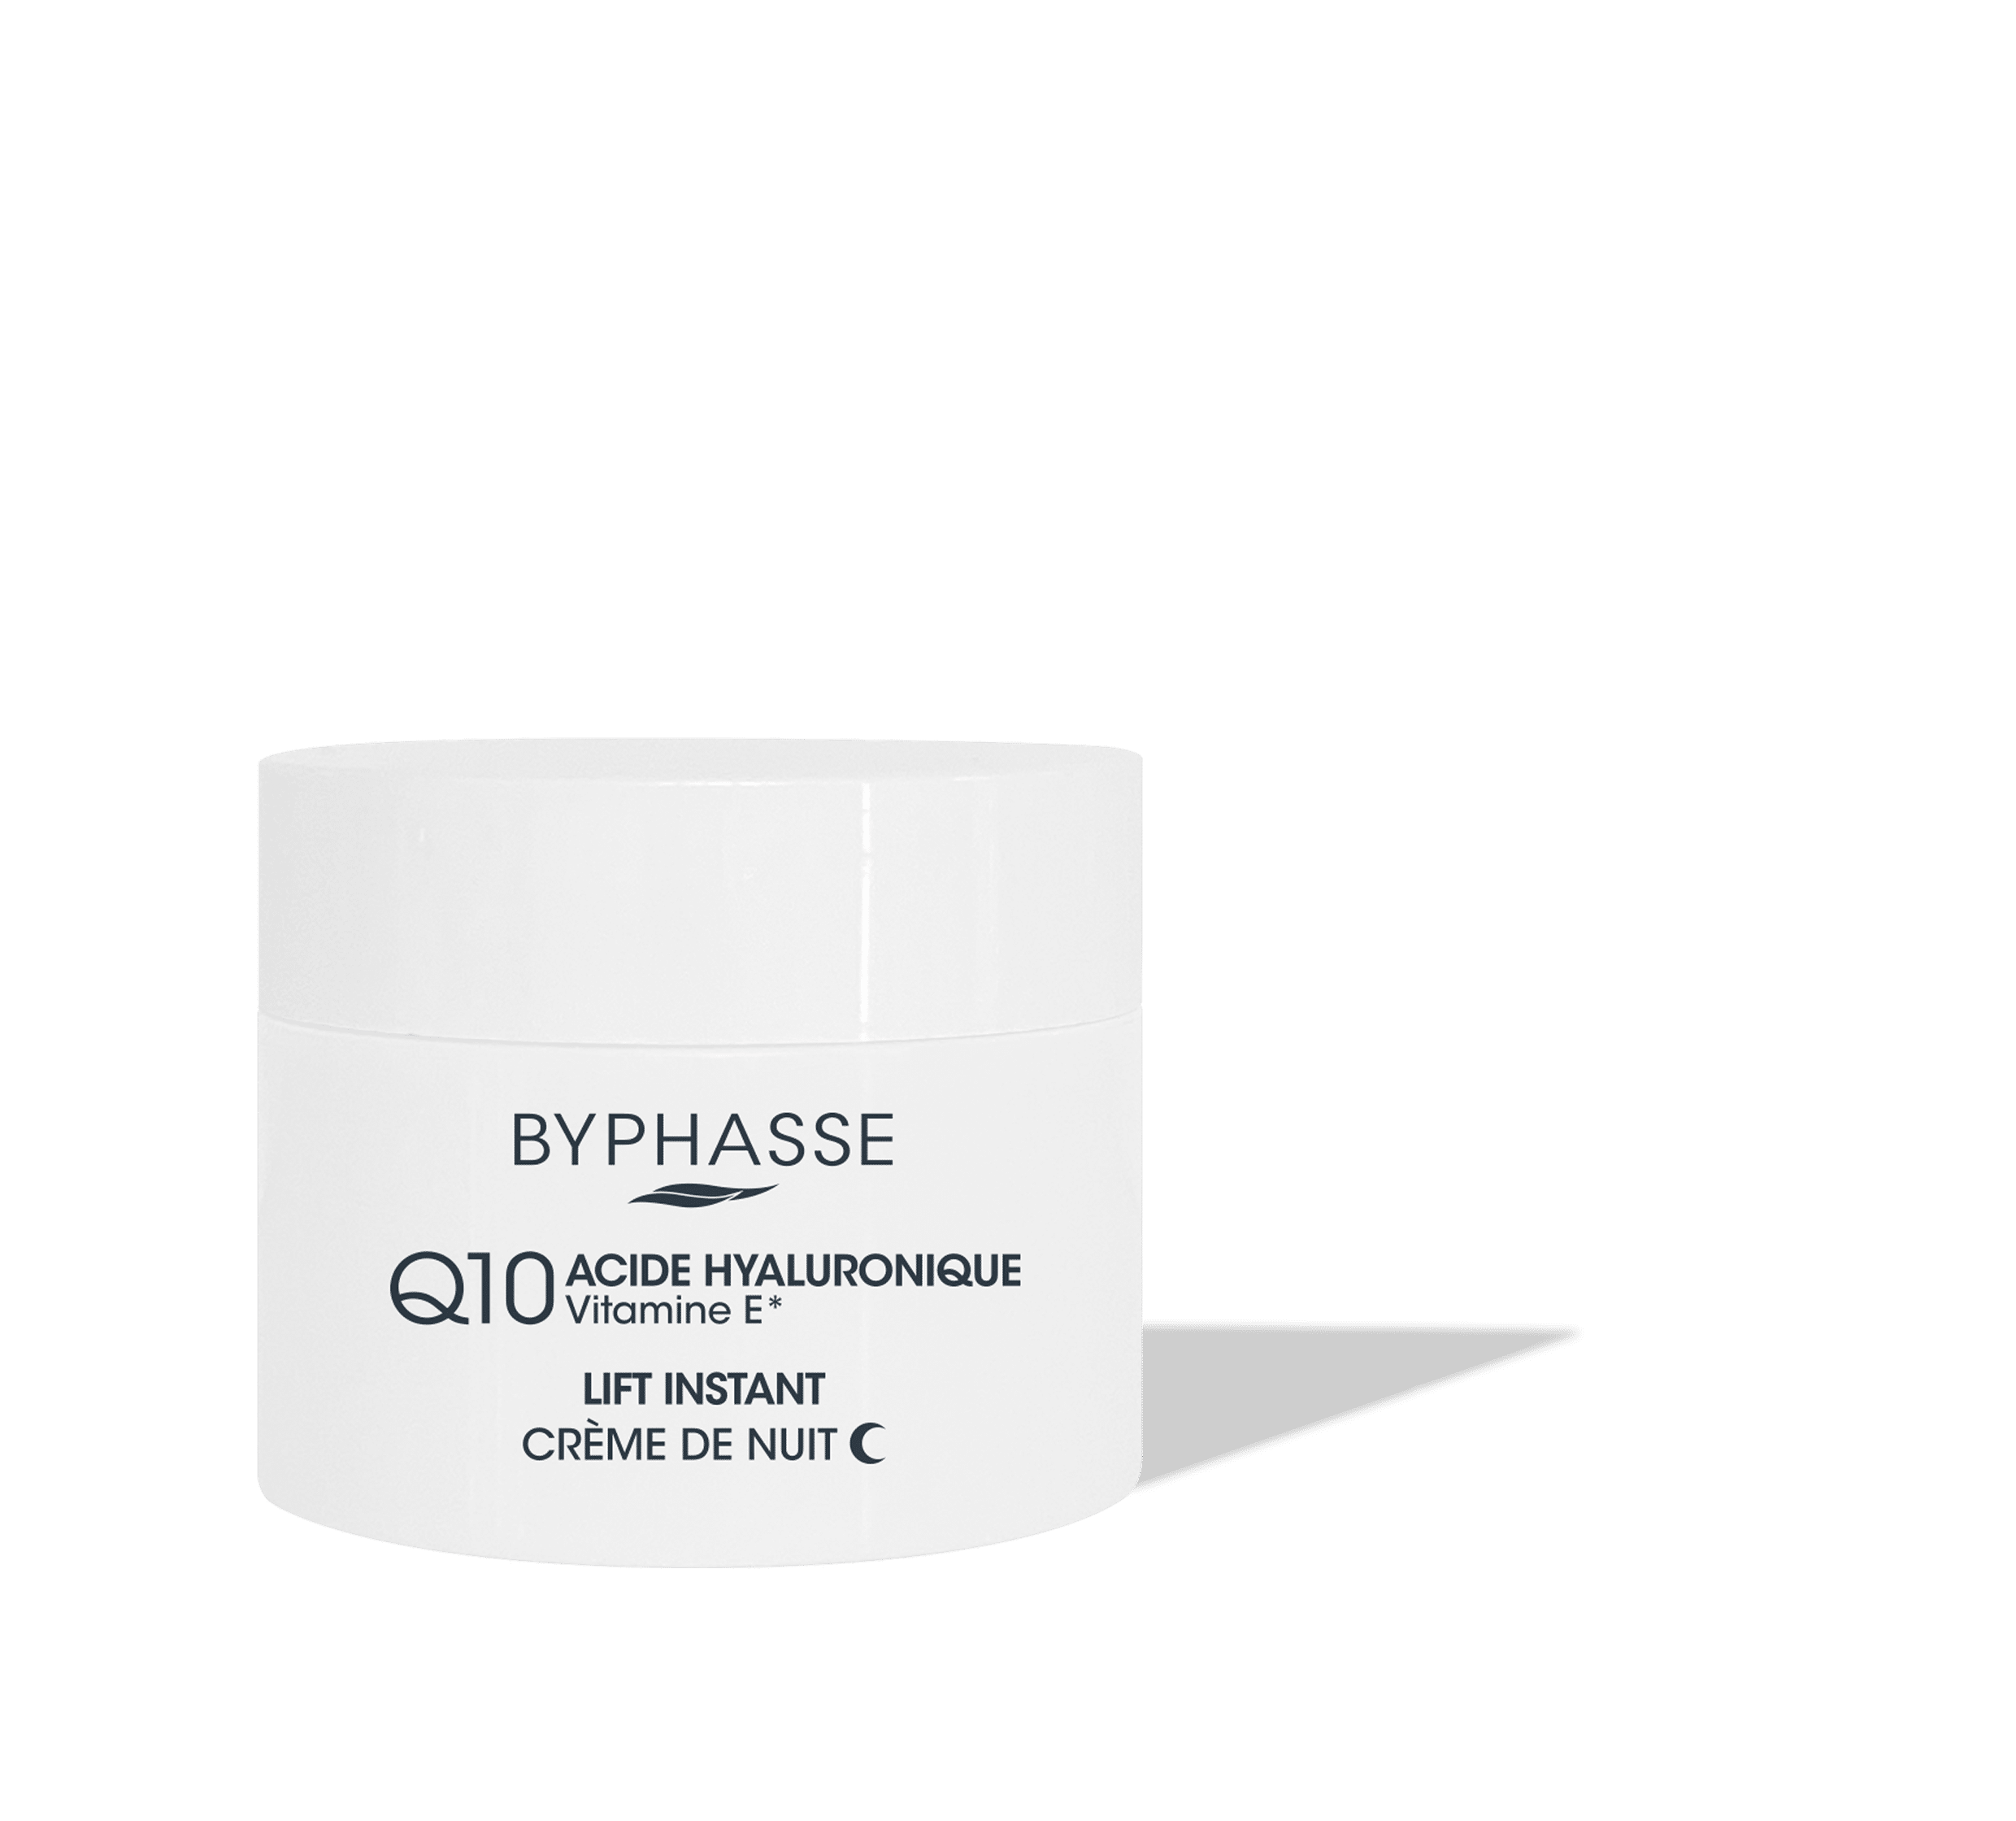 Crème de jour & nuit H24 Oligo-éléments Vitamine E Byphasse 60ml